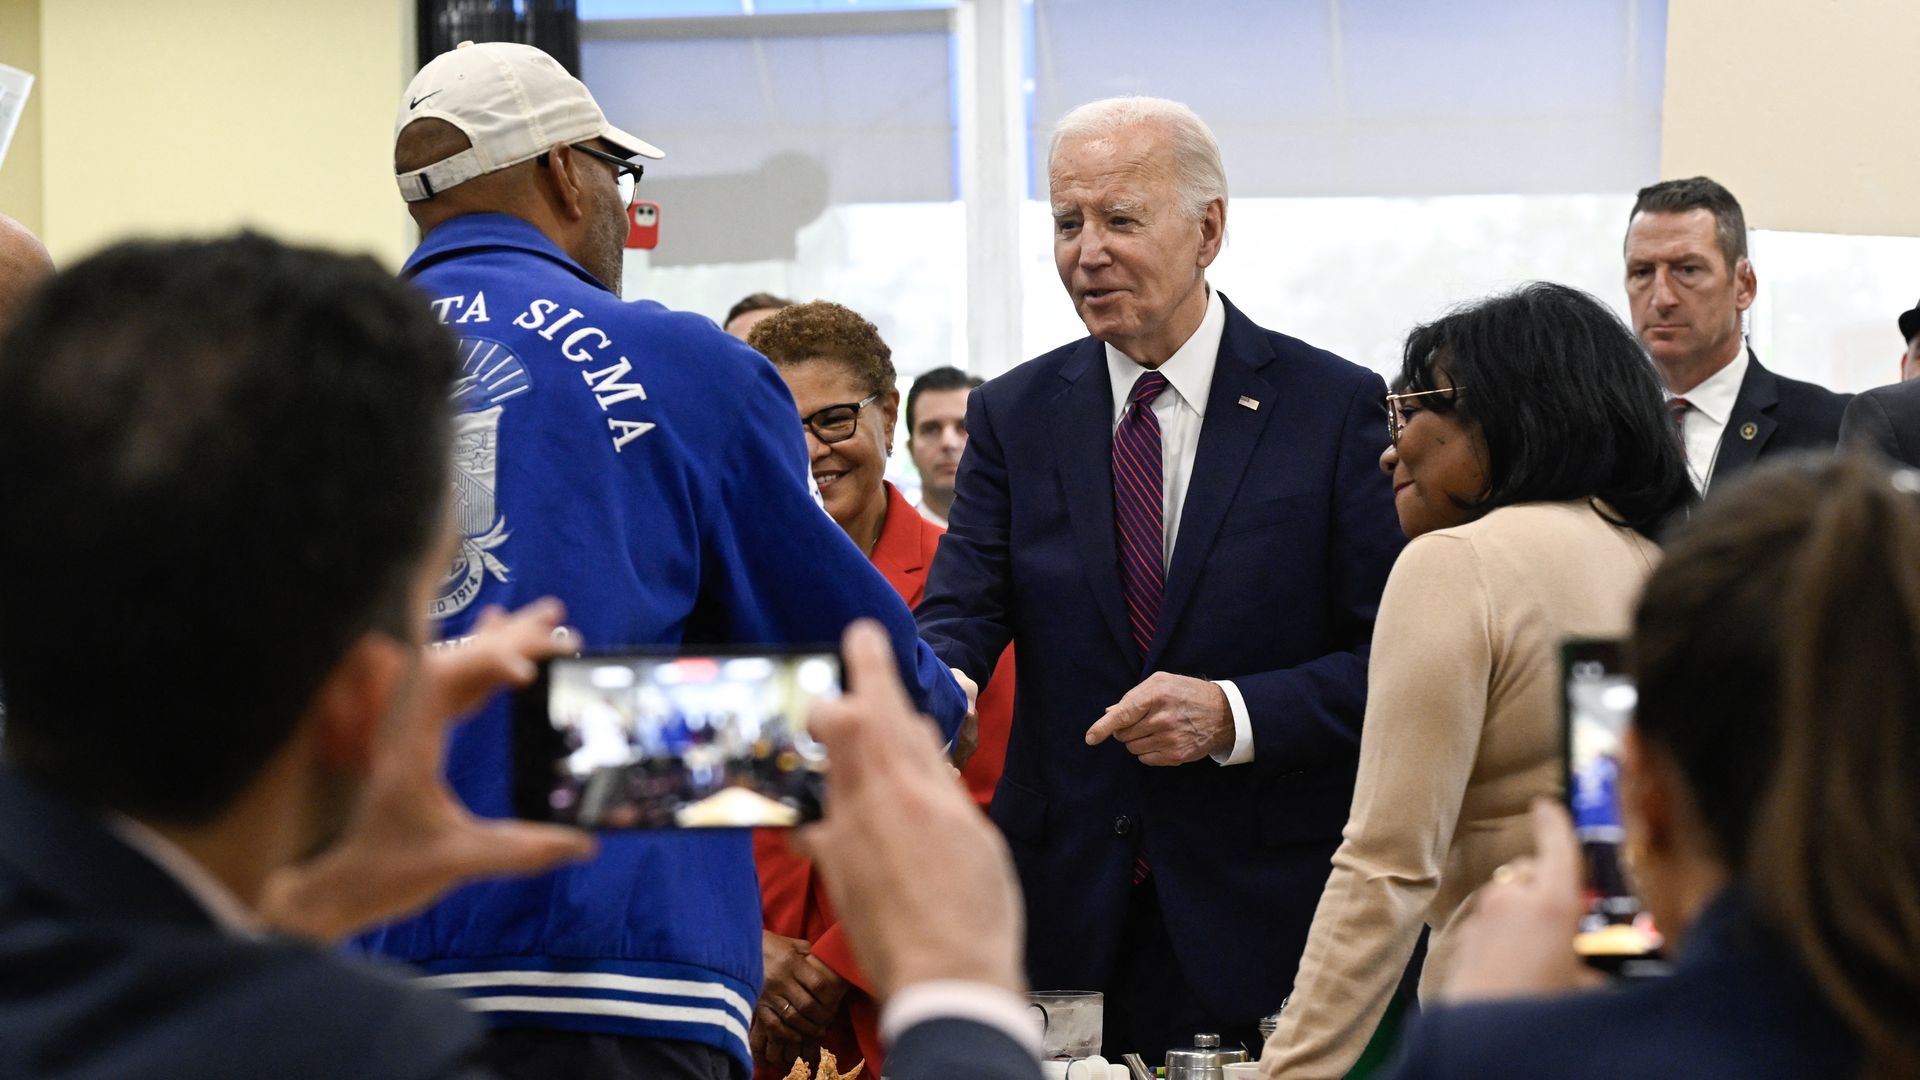 President Biden, wearing a dark blue suit, white shirt and maroon tie.